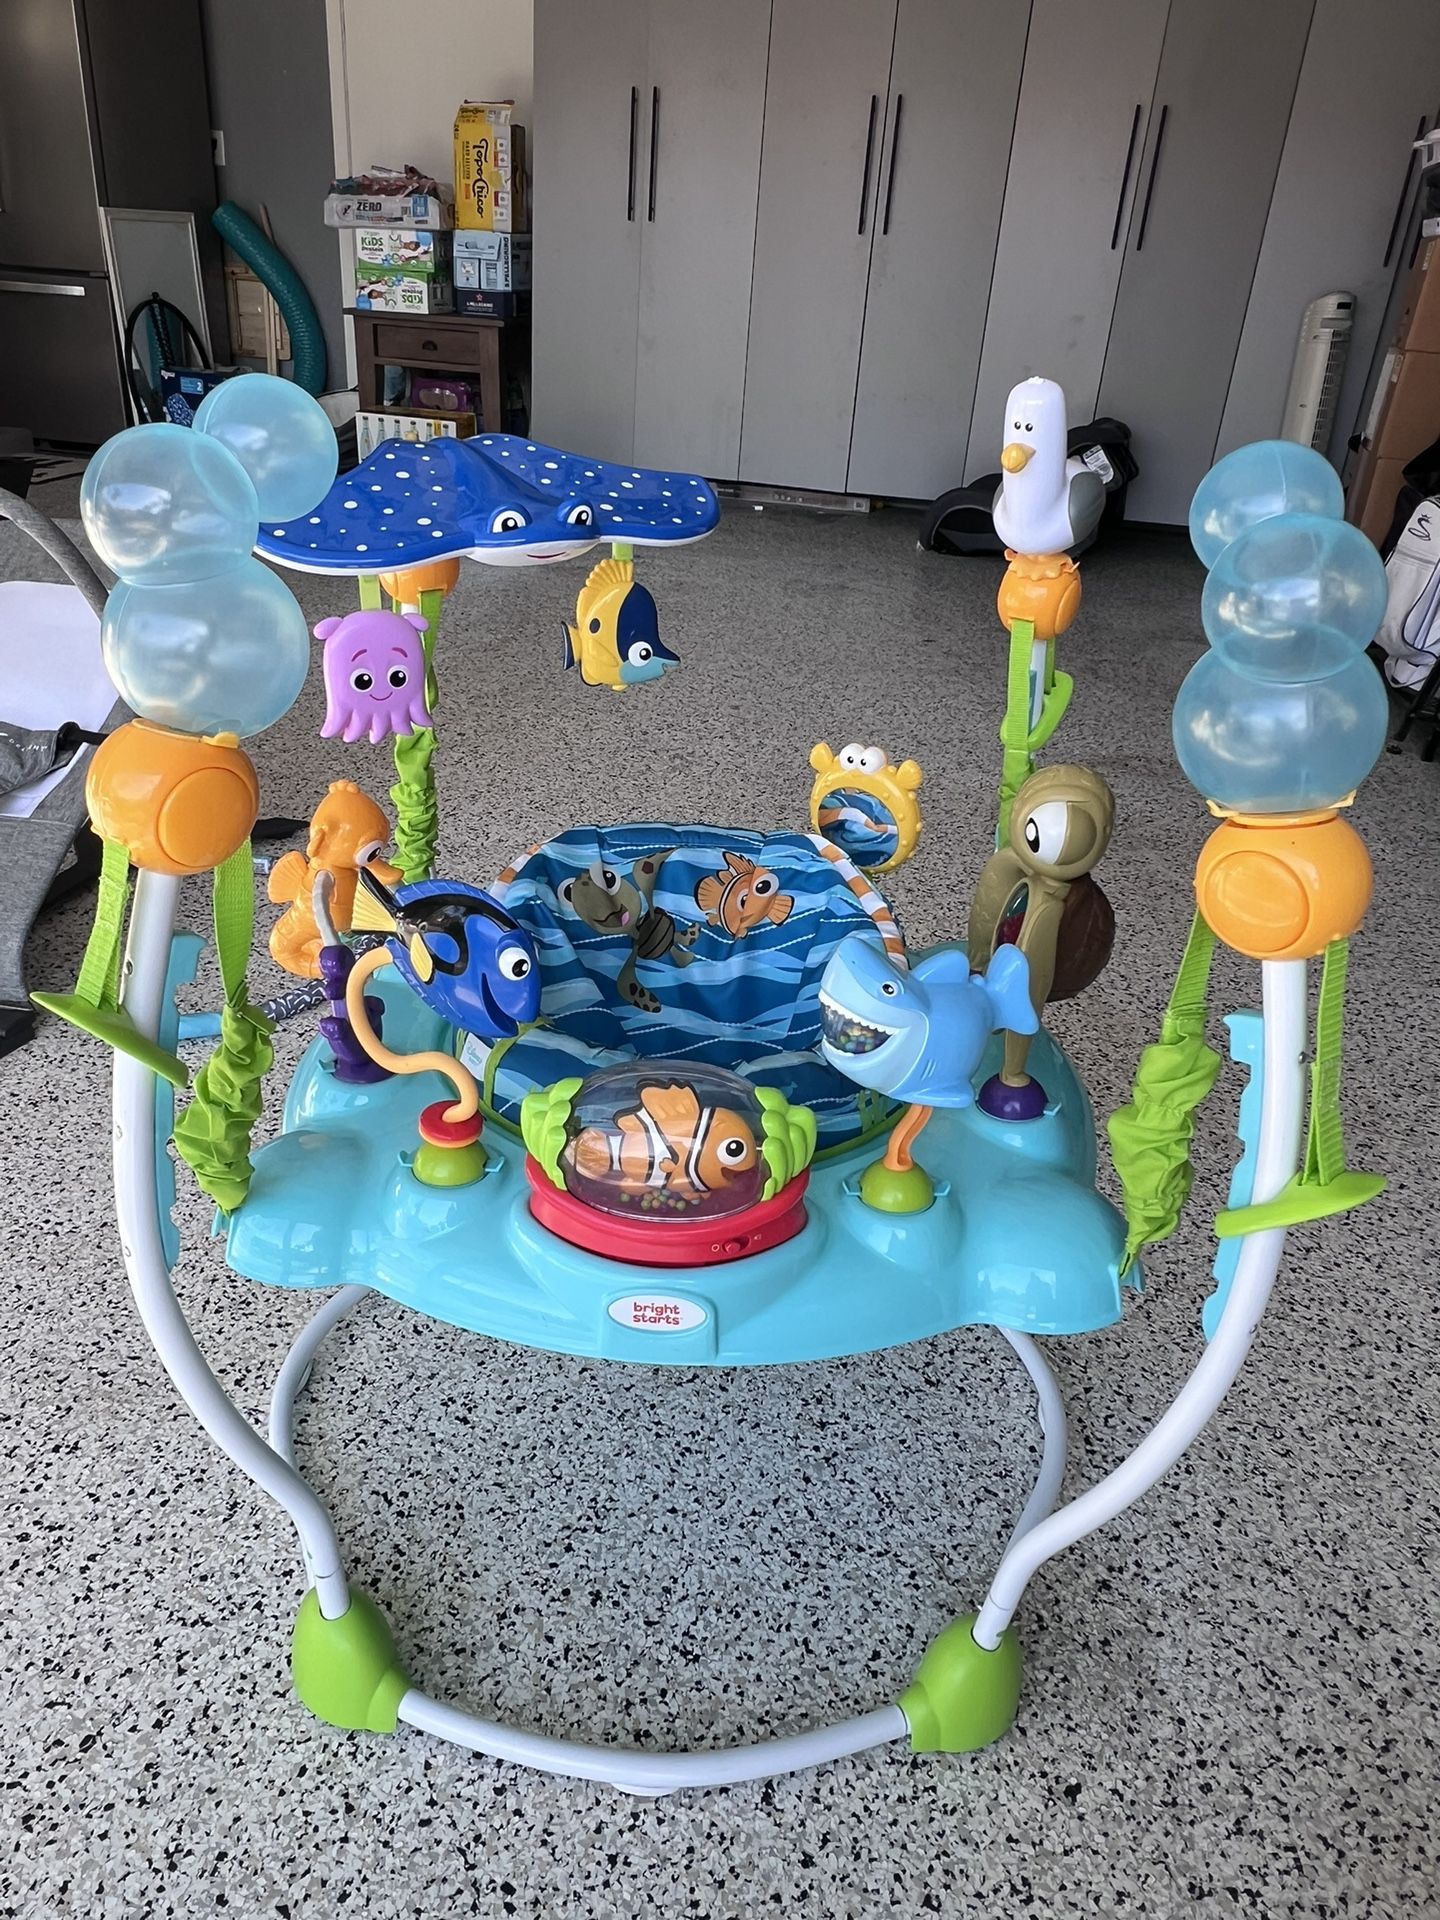 Disney Baby Finding Nemo Sea of Activities Jumper Bouncer Jumperoo